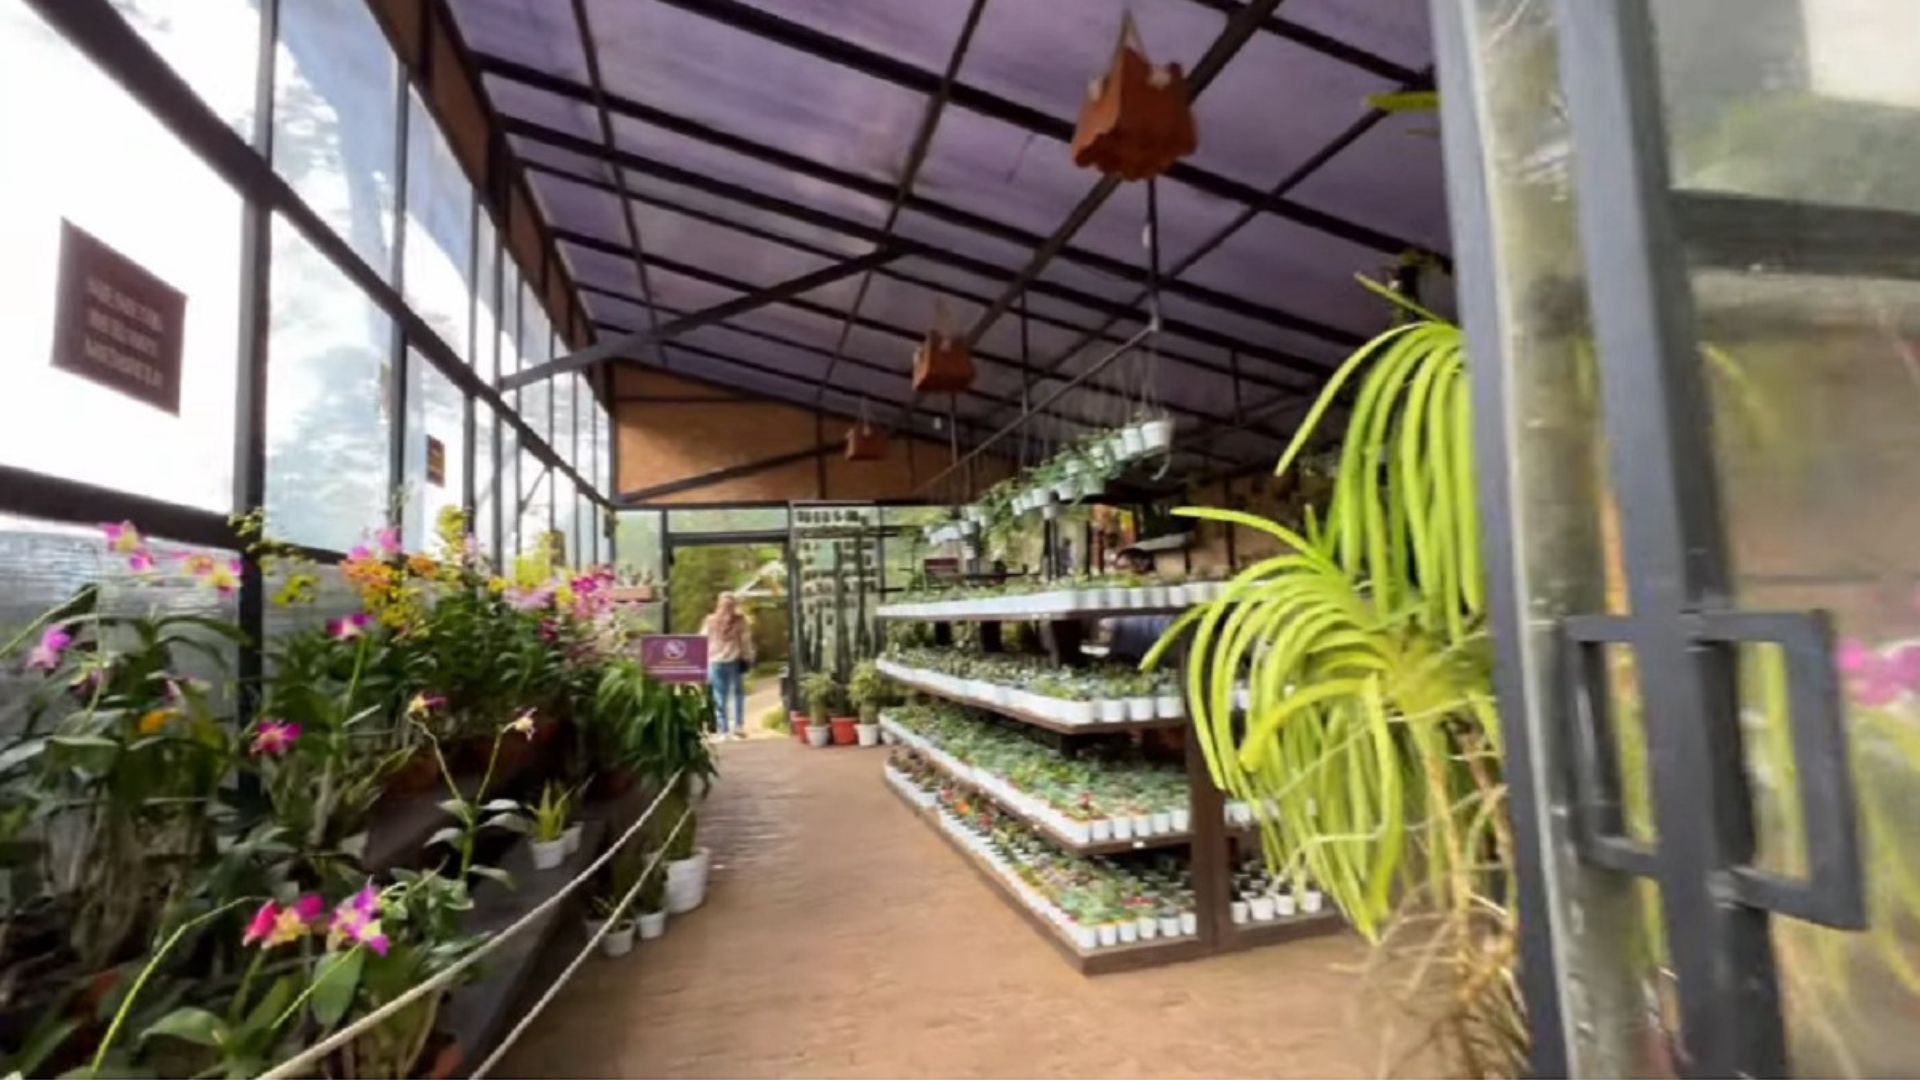 Koleksi anggrek di Orchid Forest Cikole, Bandung Barat. Pengunjung bisa belajar cara menanam anggrek yang benar./ YouTube/ Daya Channel